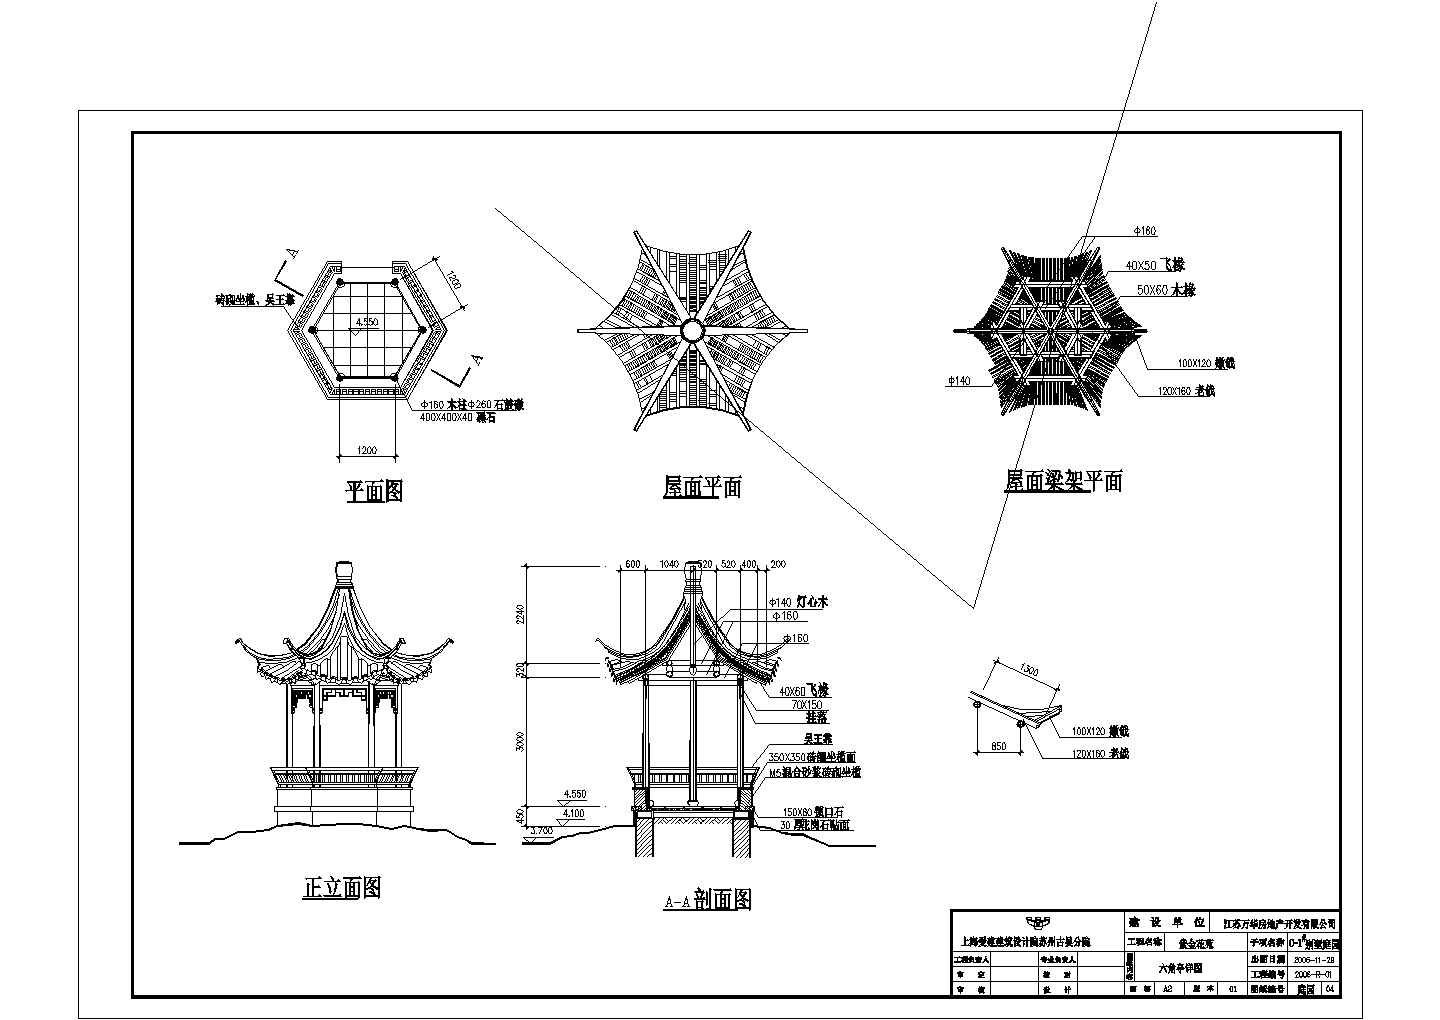 某地区中式别墅庭园景观总规划设计施工详细方案CAD图纸